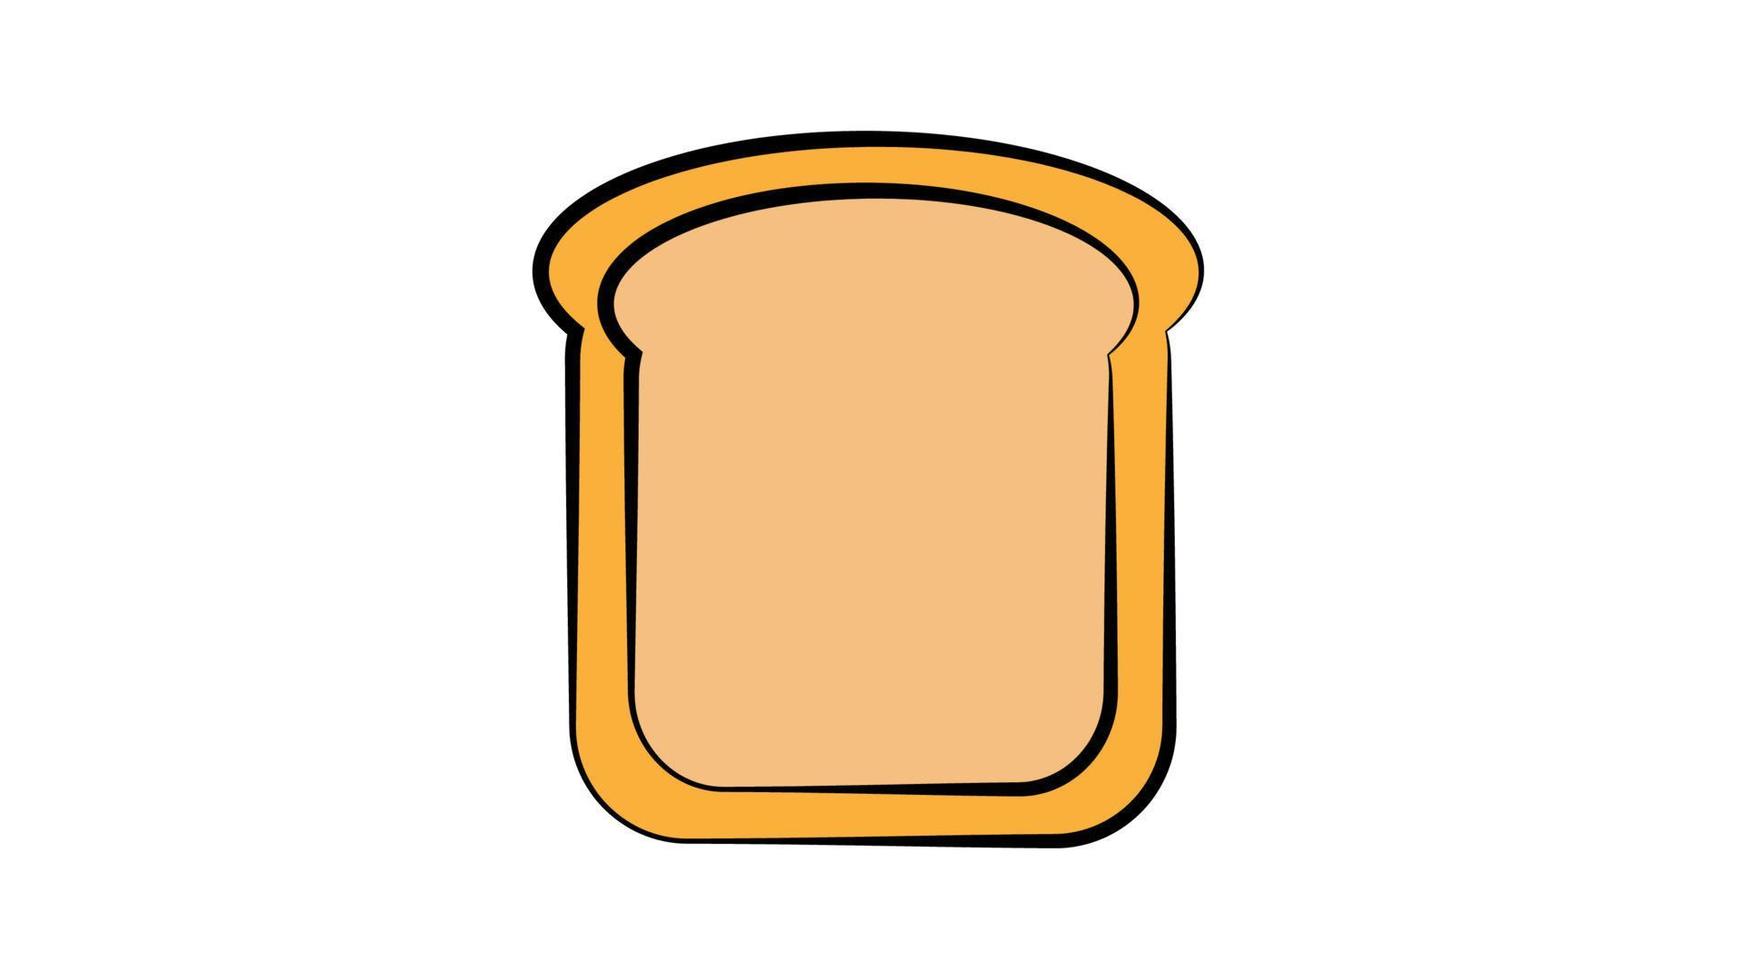 bröd rostat bröd för smörgås bit av rostad krutong. lunch, middag, frukost mellanmål. isolerat vit bakgrund. eps10 vektor illustration